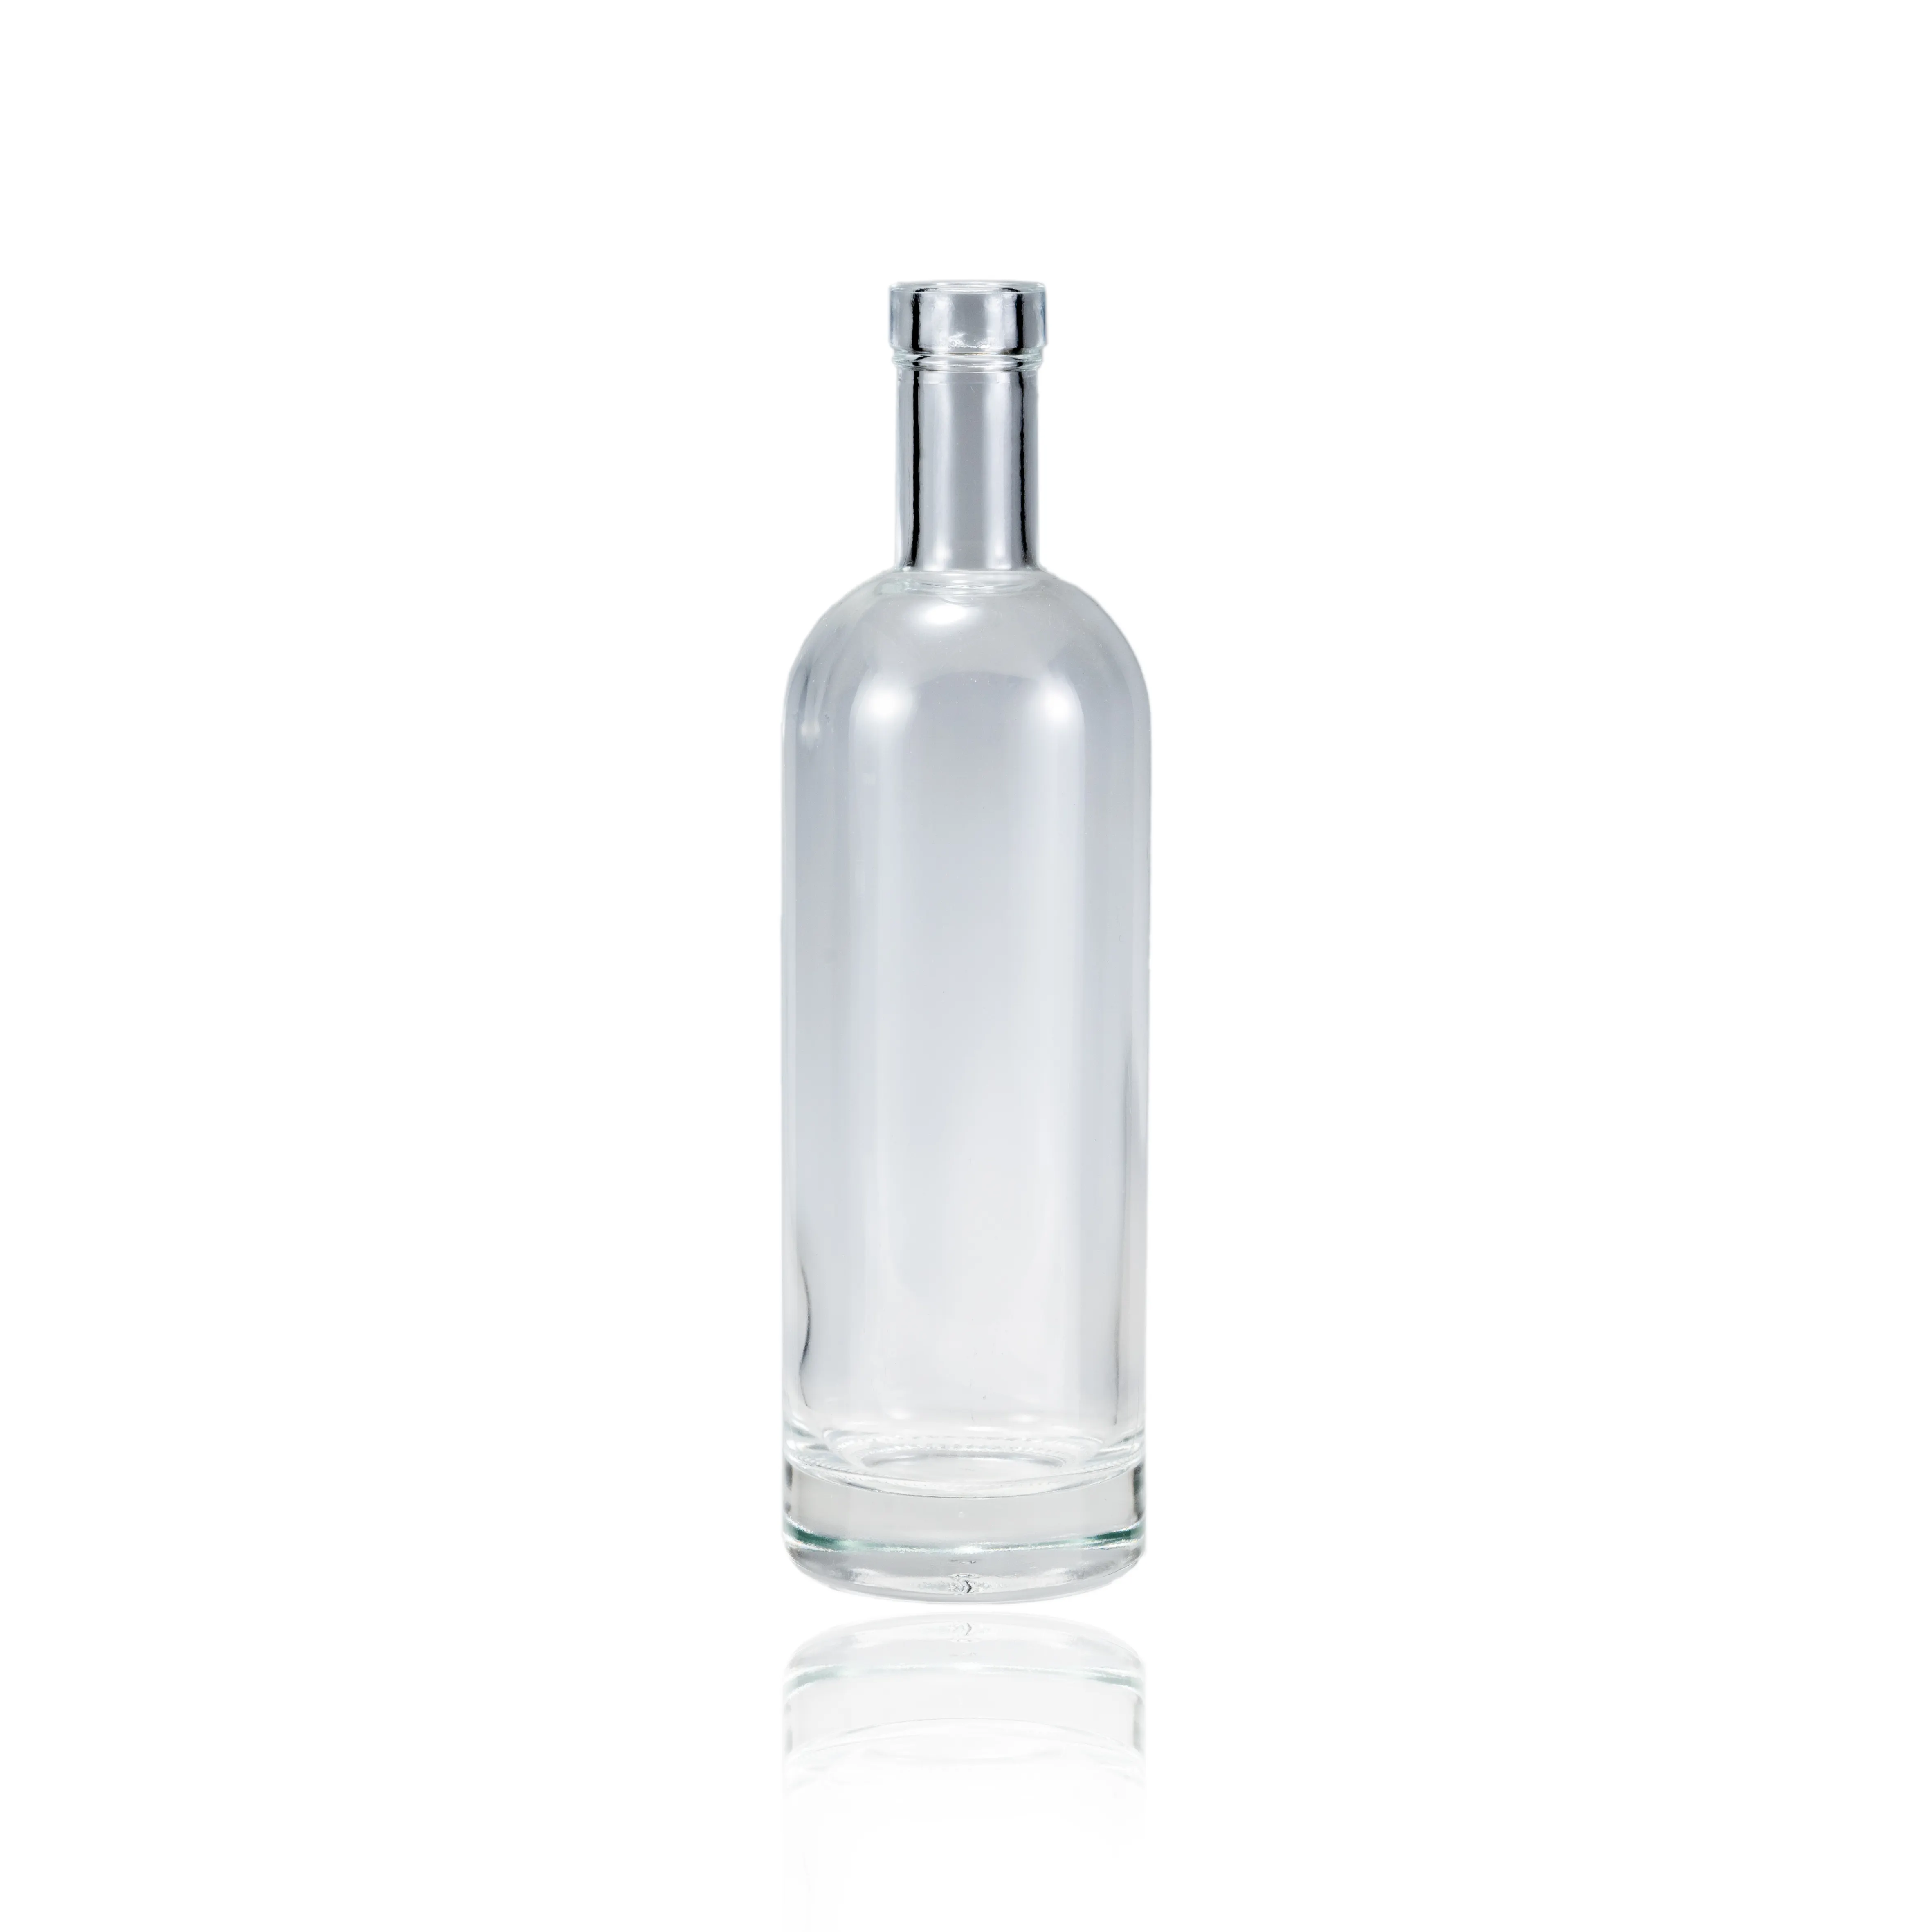 Runde 500ml kurze Hals transparente Wodka Rum Tequila Schnaps Glas Weinflasche mit Kork deckel